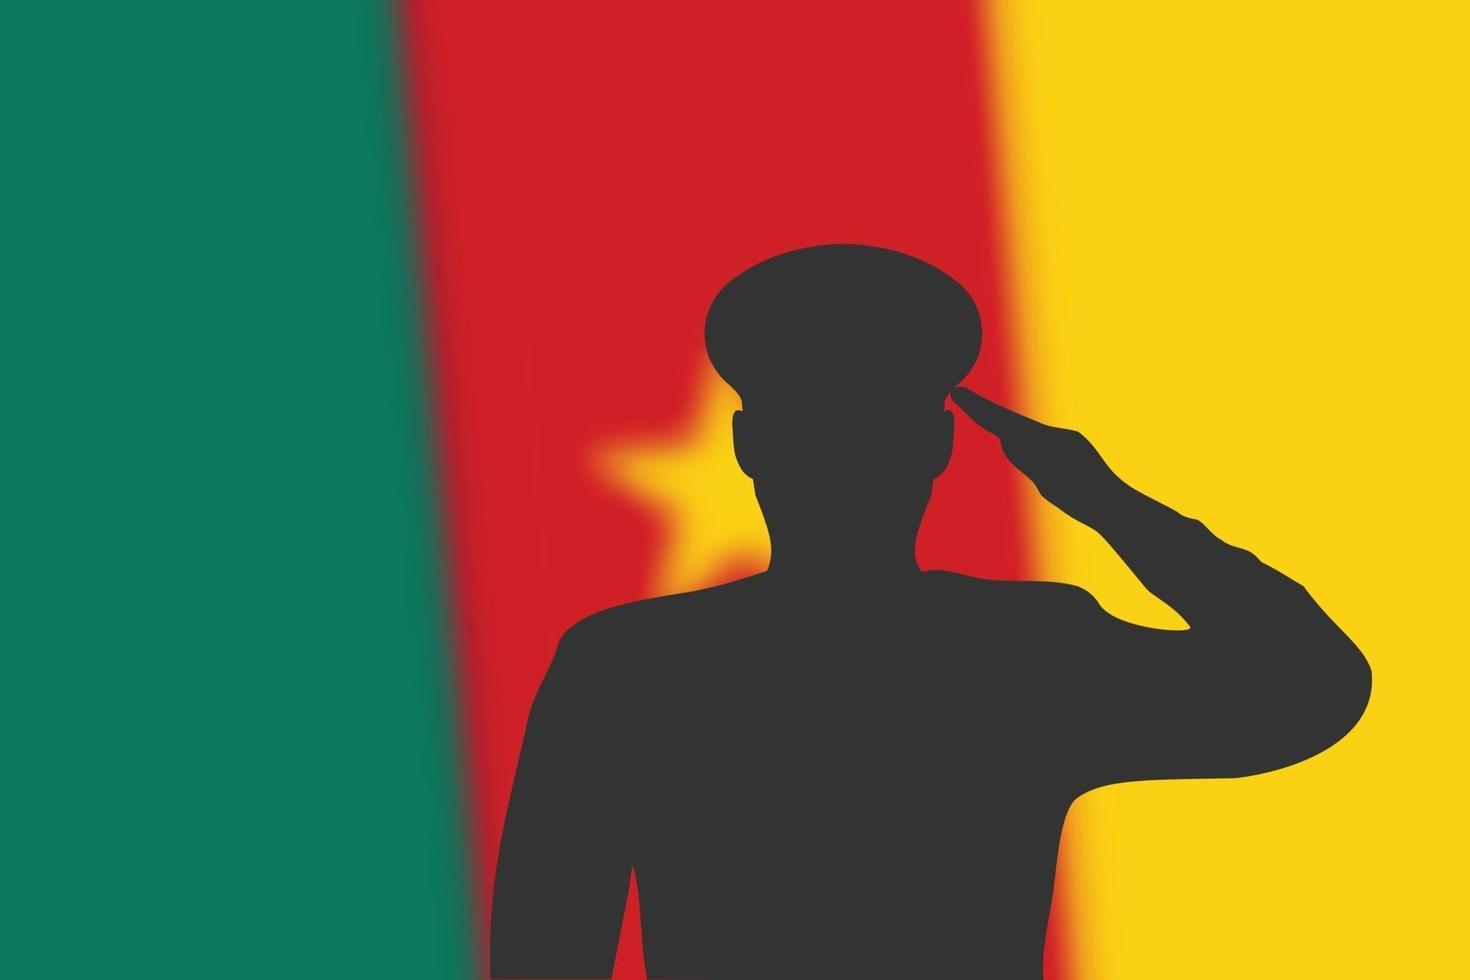 Lötsilhouette auf unscharfem Hintergrund mit Kamerun-Flagge. vektor